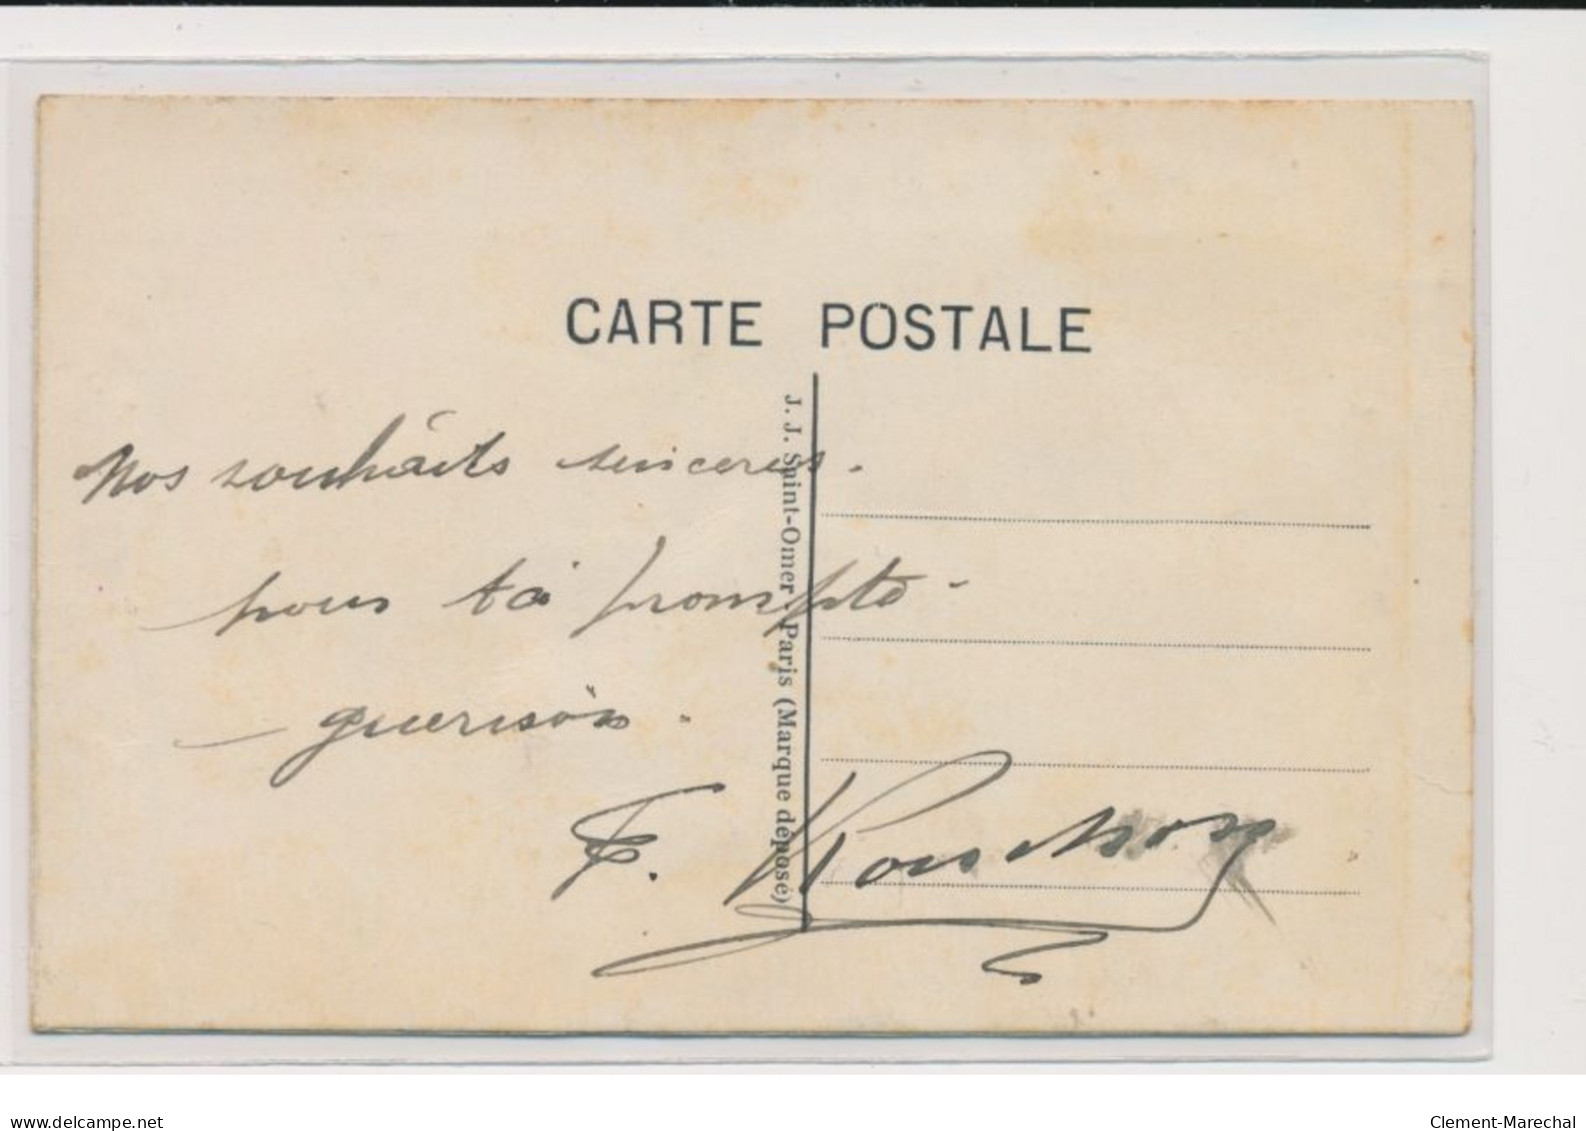 MILITAIRE : Carte Postale Gaufrée A.S.C.(fantaisie - Militaires)- Très Bon état - Regimente